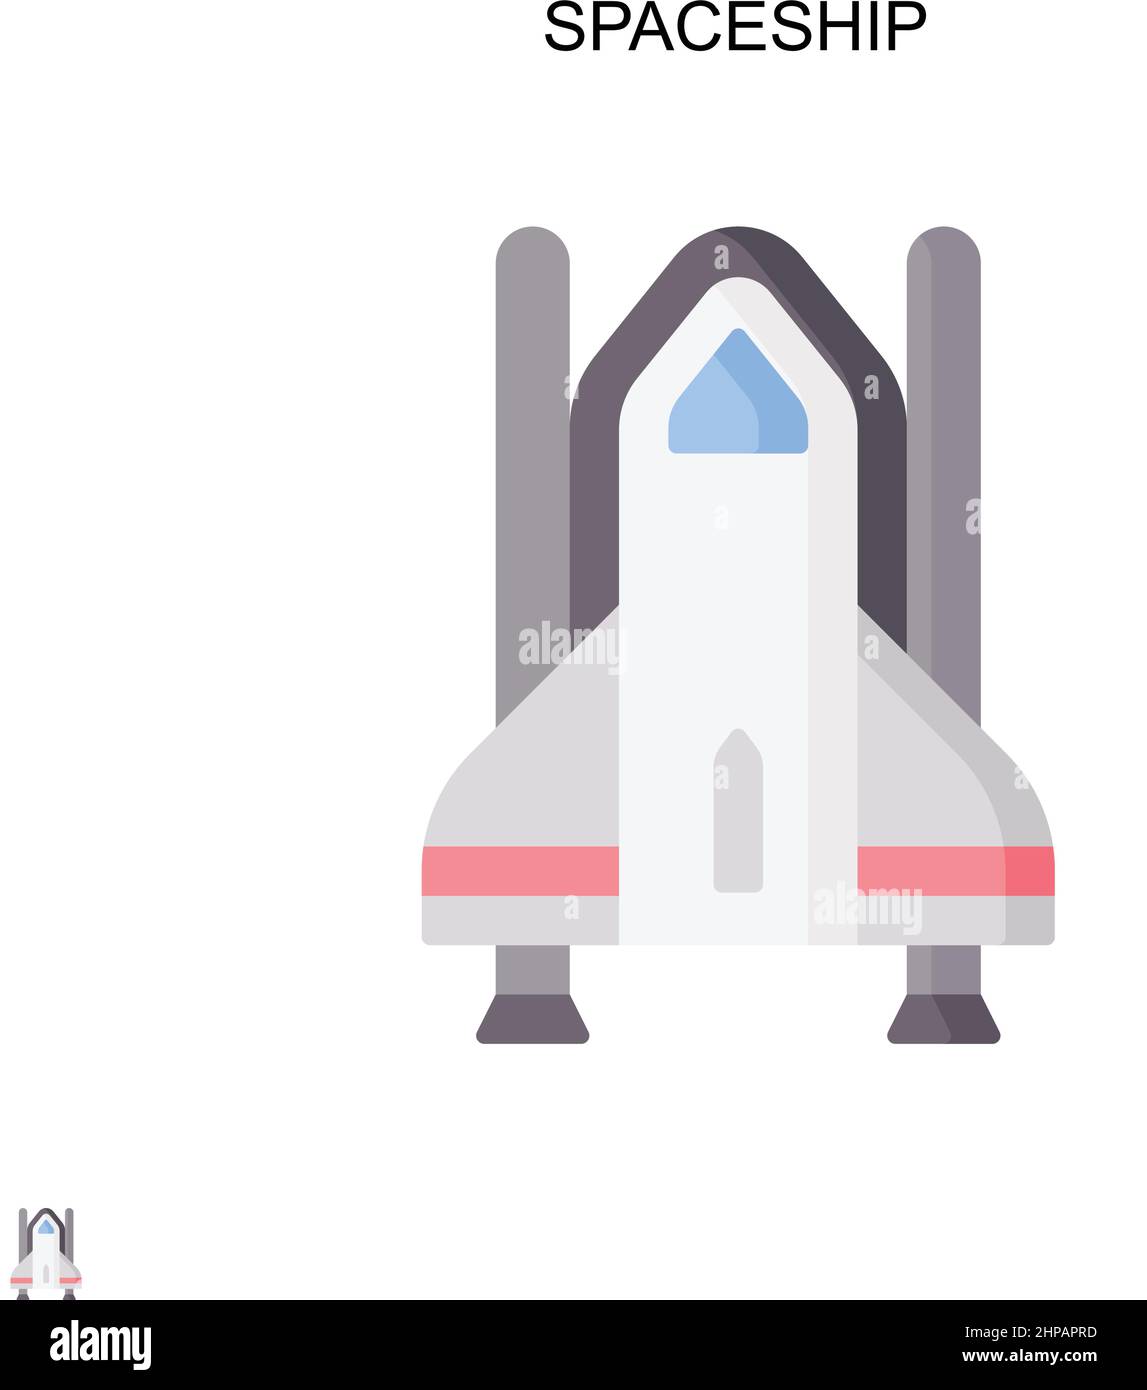 Einfaches Vektorsymbol für das Raumschiff. Illustration Symbol Design-Vorlage für Web mobile UI-Element. Stock Vektor